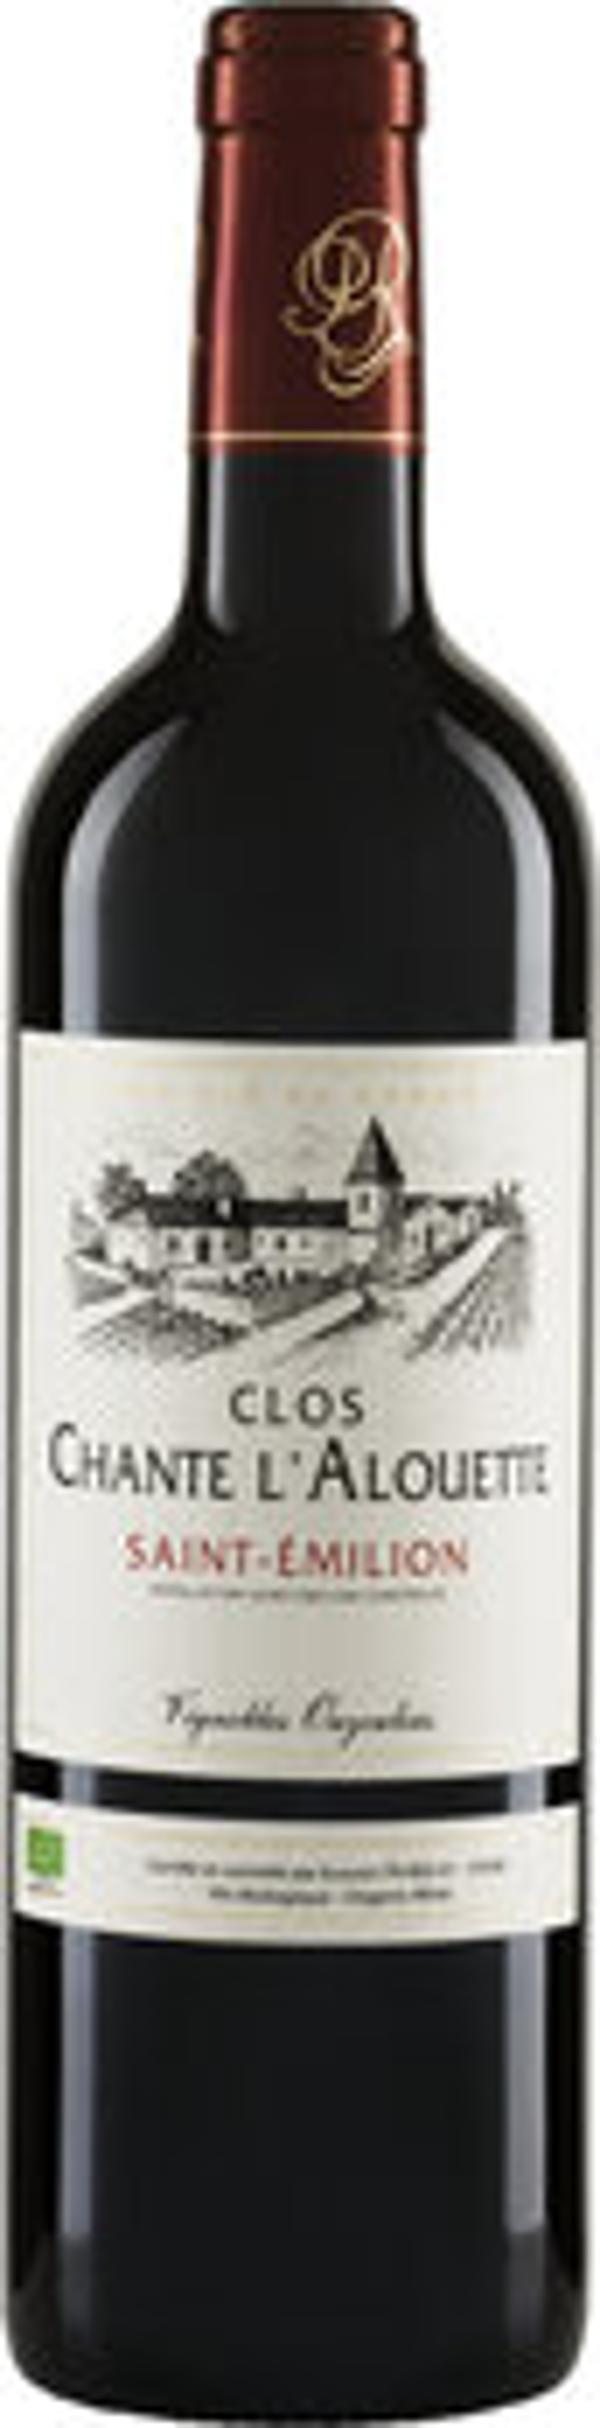 Produktfoto zu Clos Chante l'Alouette St.-Émilion AOC